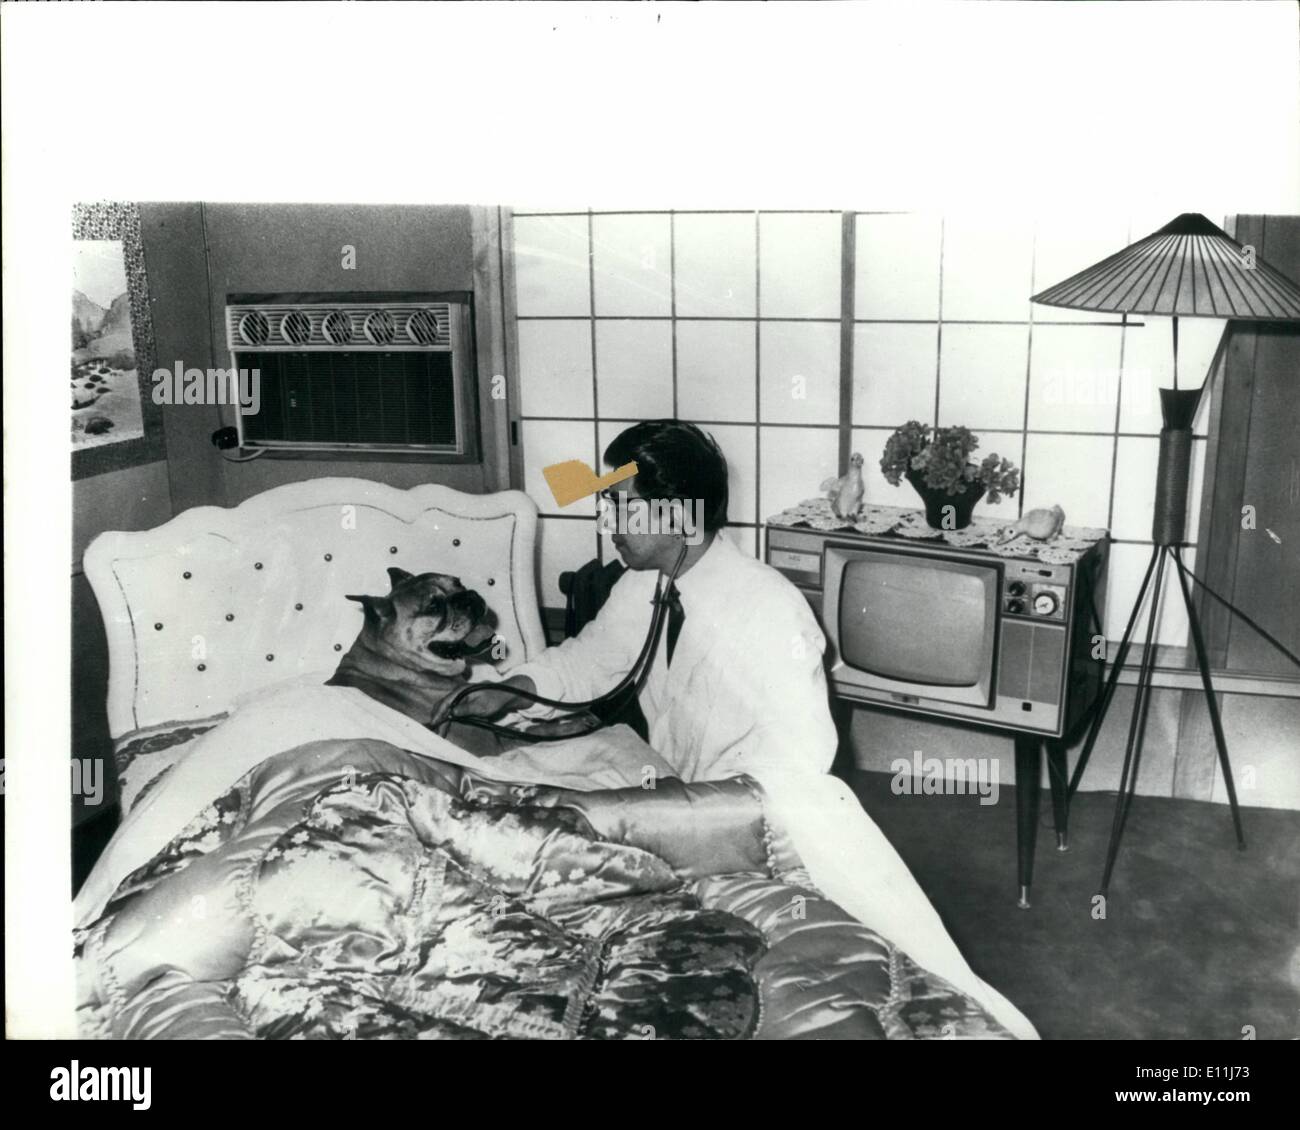 Lug. 07, 1978 - Hotel di lusso per cani.: ricchi giapponesi gli amanti del cane di inviare i loro animali domestici per la sezione hotel del Iwamoto Animal Hospital nel distretto di Nakano di Tokyo per il riposo e il relax, lavare e brush-up, taglio di capelli e revisione generale. Non ci sono kannels, appena 49 camere incluse 4 suite di lusso tutte climatizzate alcune con letti, bagni, e televisori a colori set. Alcune delle '' CLIENTI'' amano e non vogliono lasciare. Qui, i cani possono soddisfare adatto si accoppia un altro motivo per cui alcuni di essi trovano difficile andare a casa Foto Stock